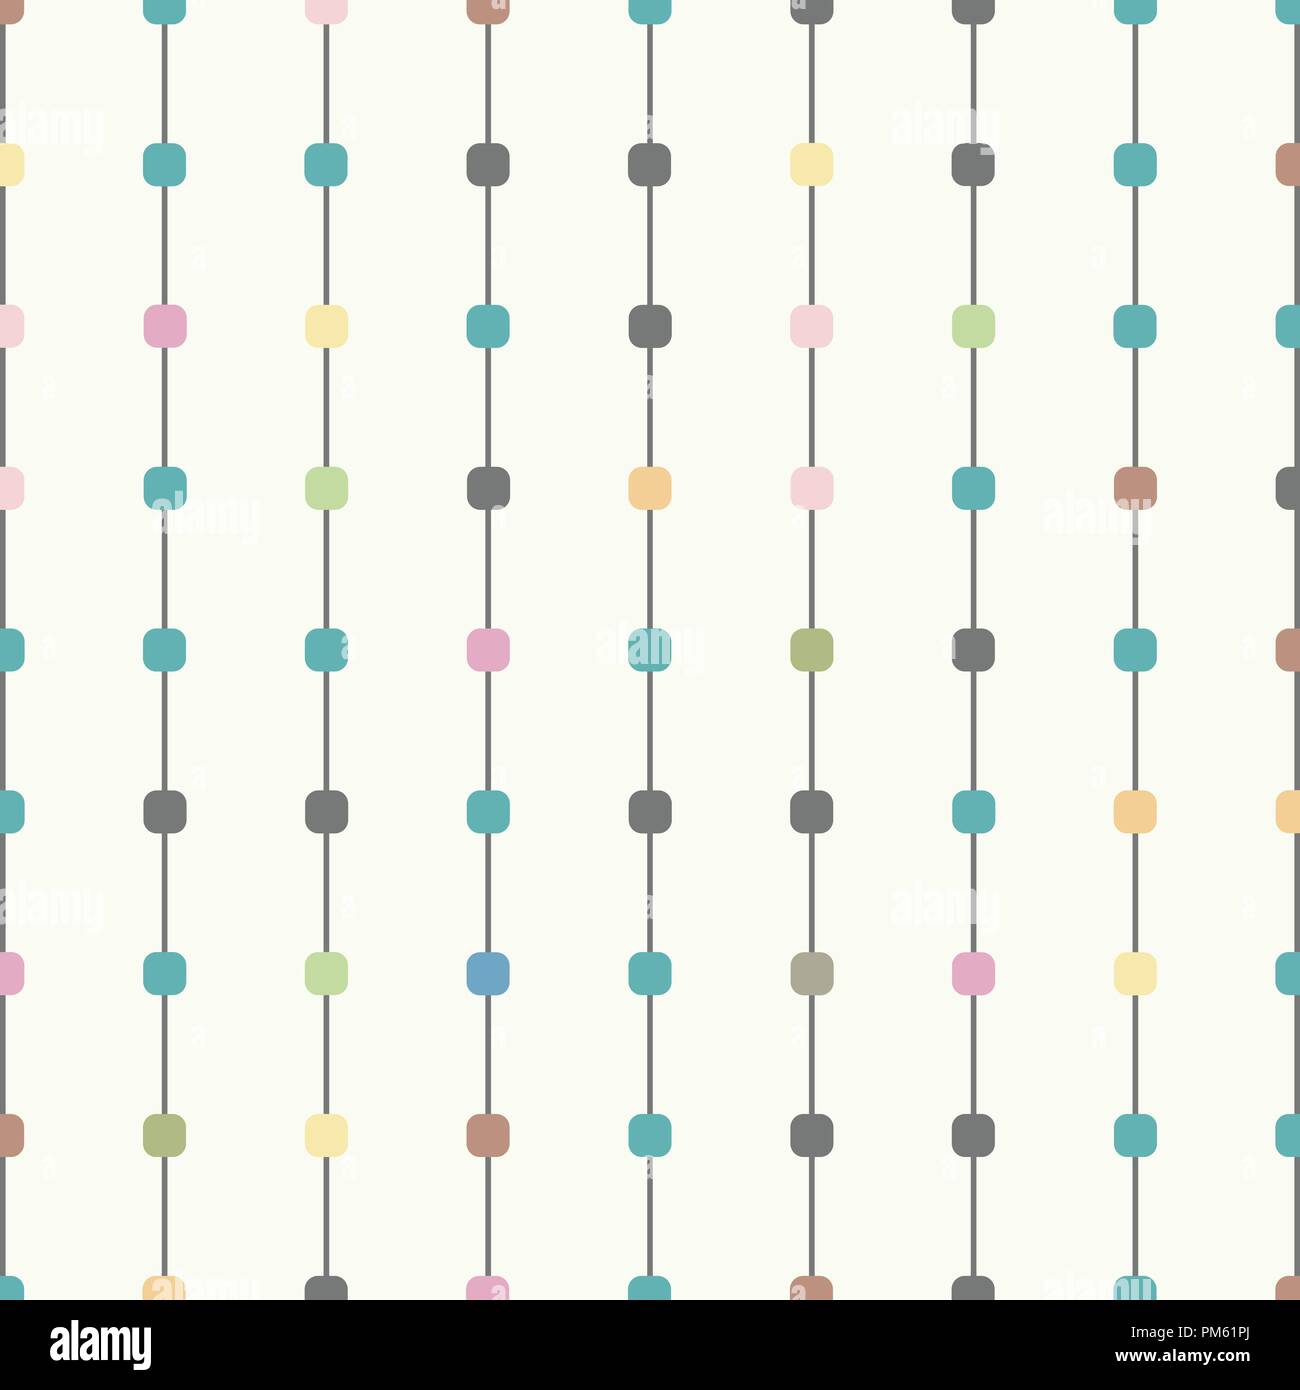 Zusammenfassung von bunten Punktmuster auf dem Streifen Linie Hintergrund, Illustration Vector EPS 10. Stock Vektor